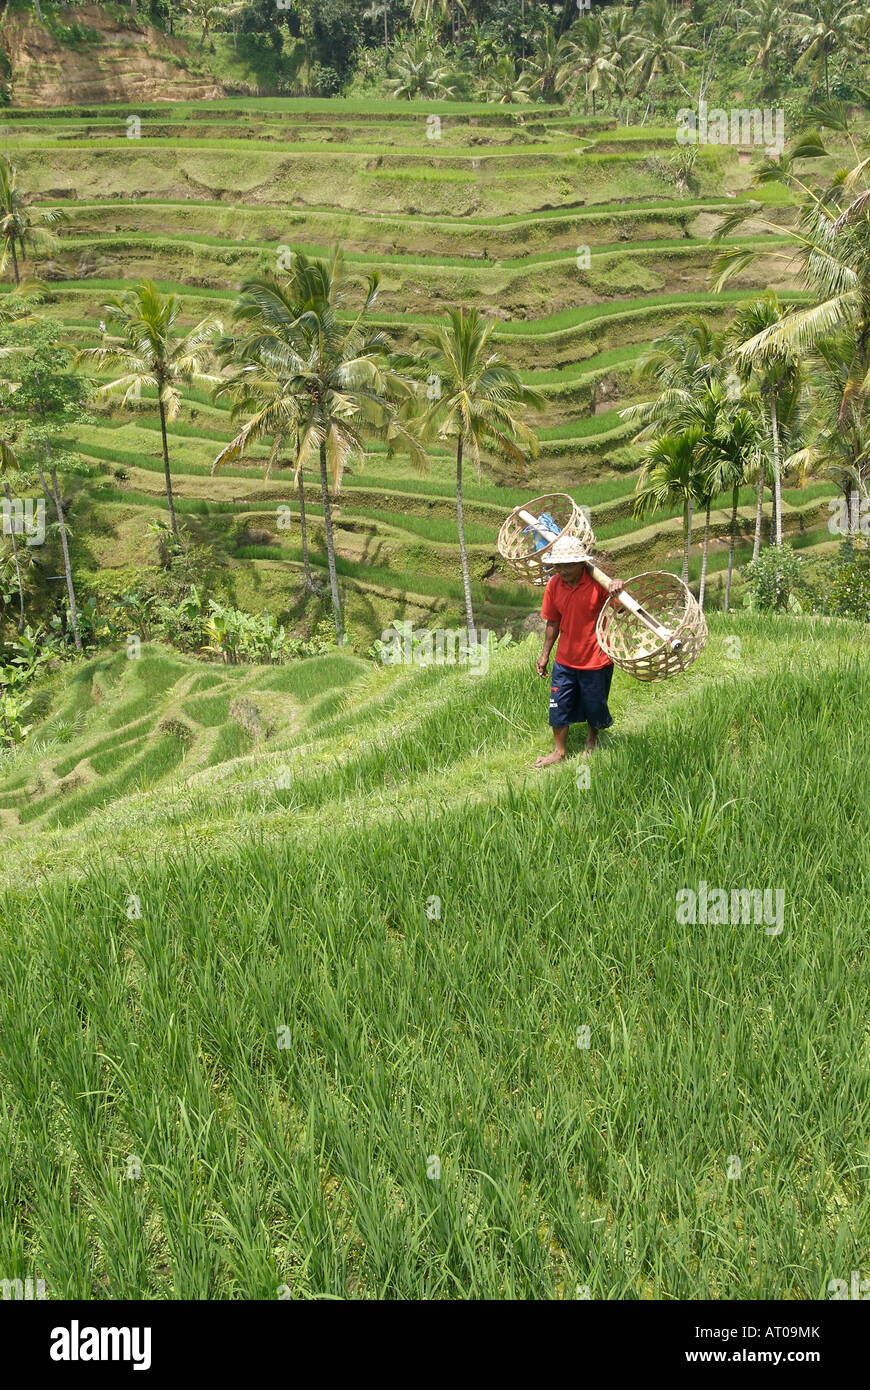 Un granjero lleva cestas de arroz a través de campos de arroz en terrazas, cerca de la ciudad de Ubud, Bali, Indonesia Foto de stock